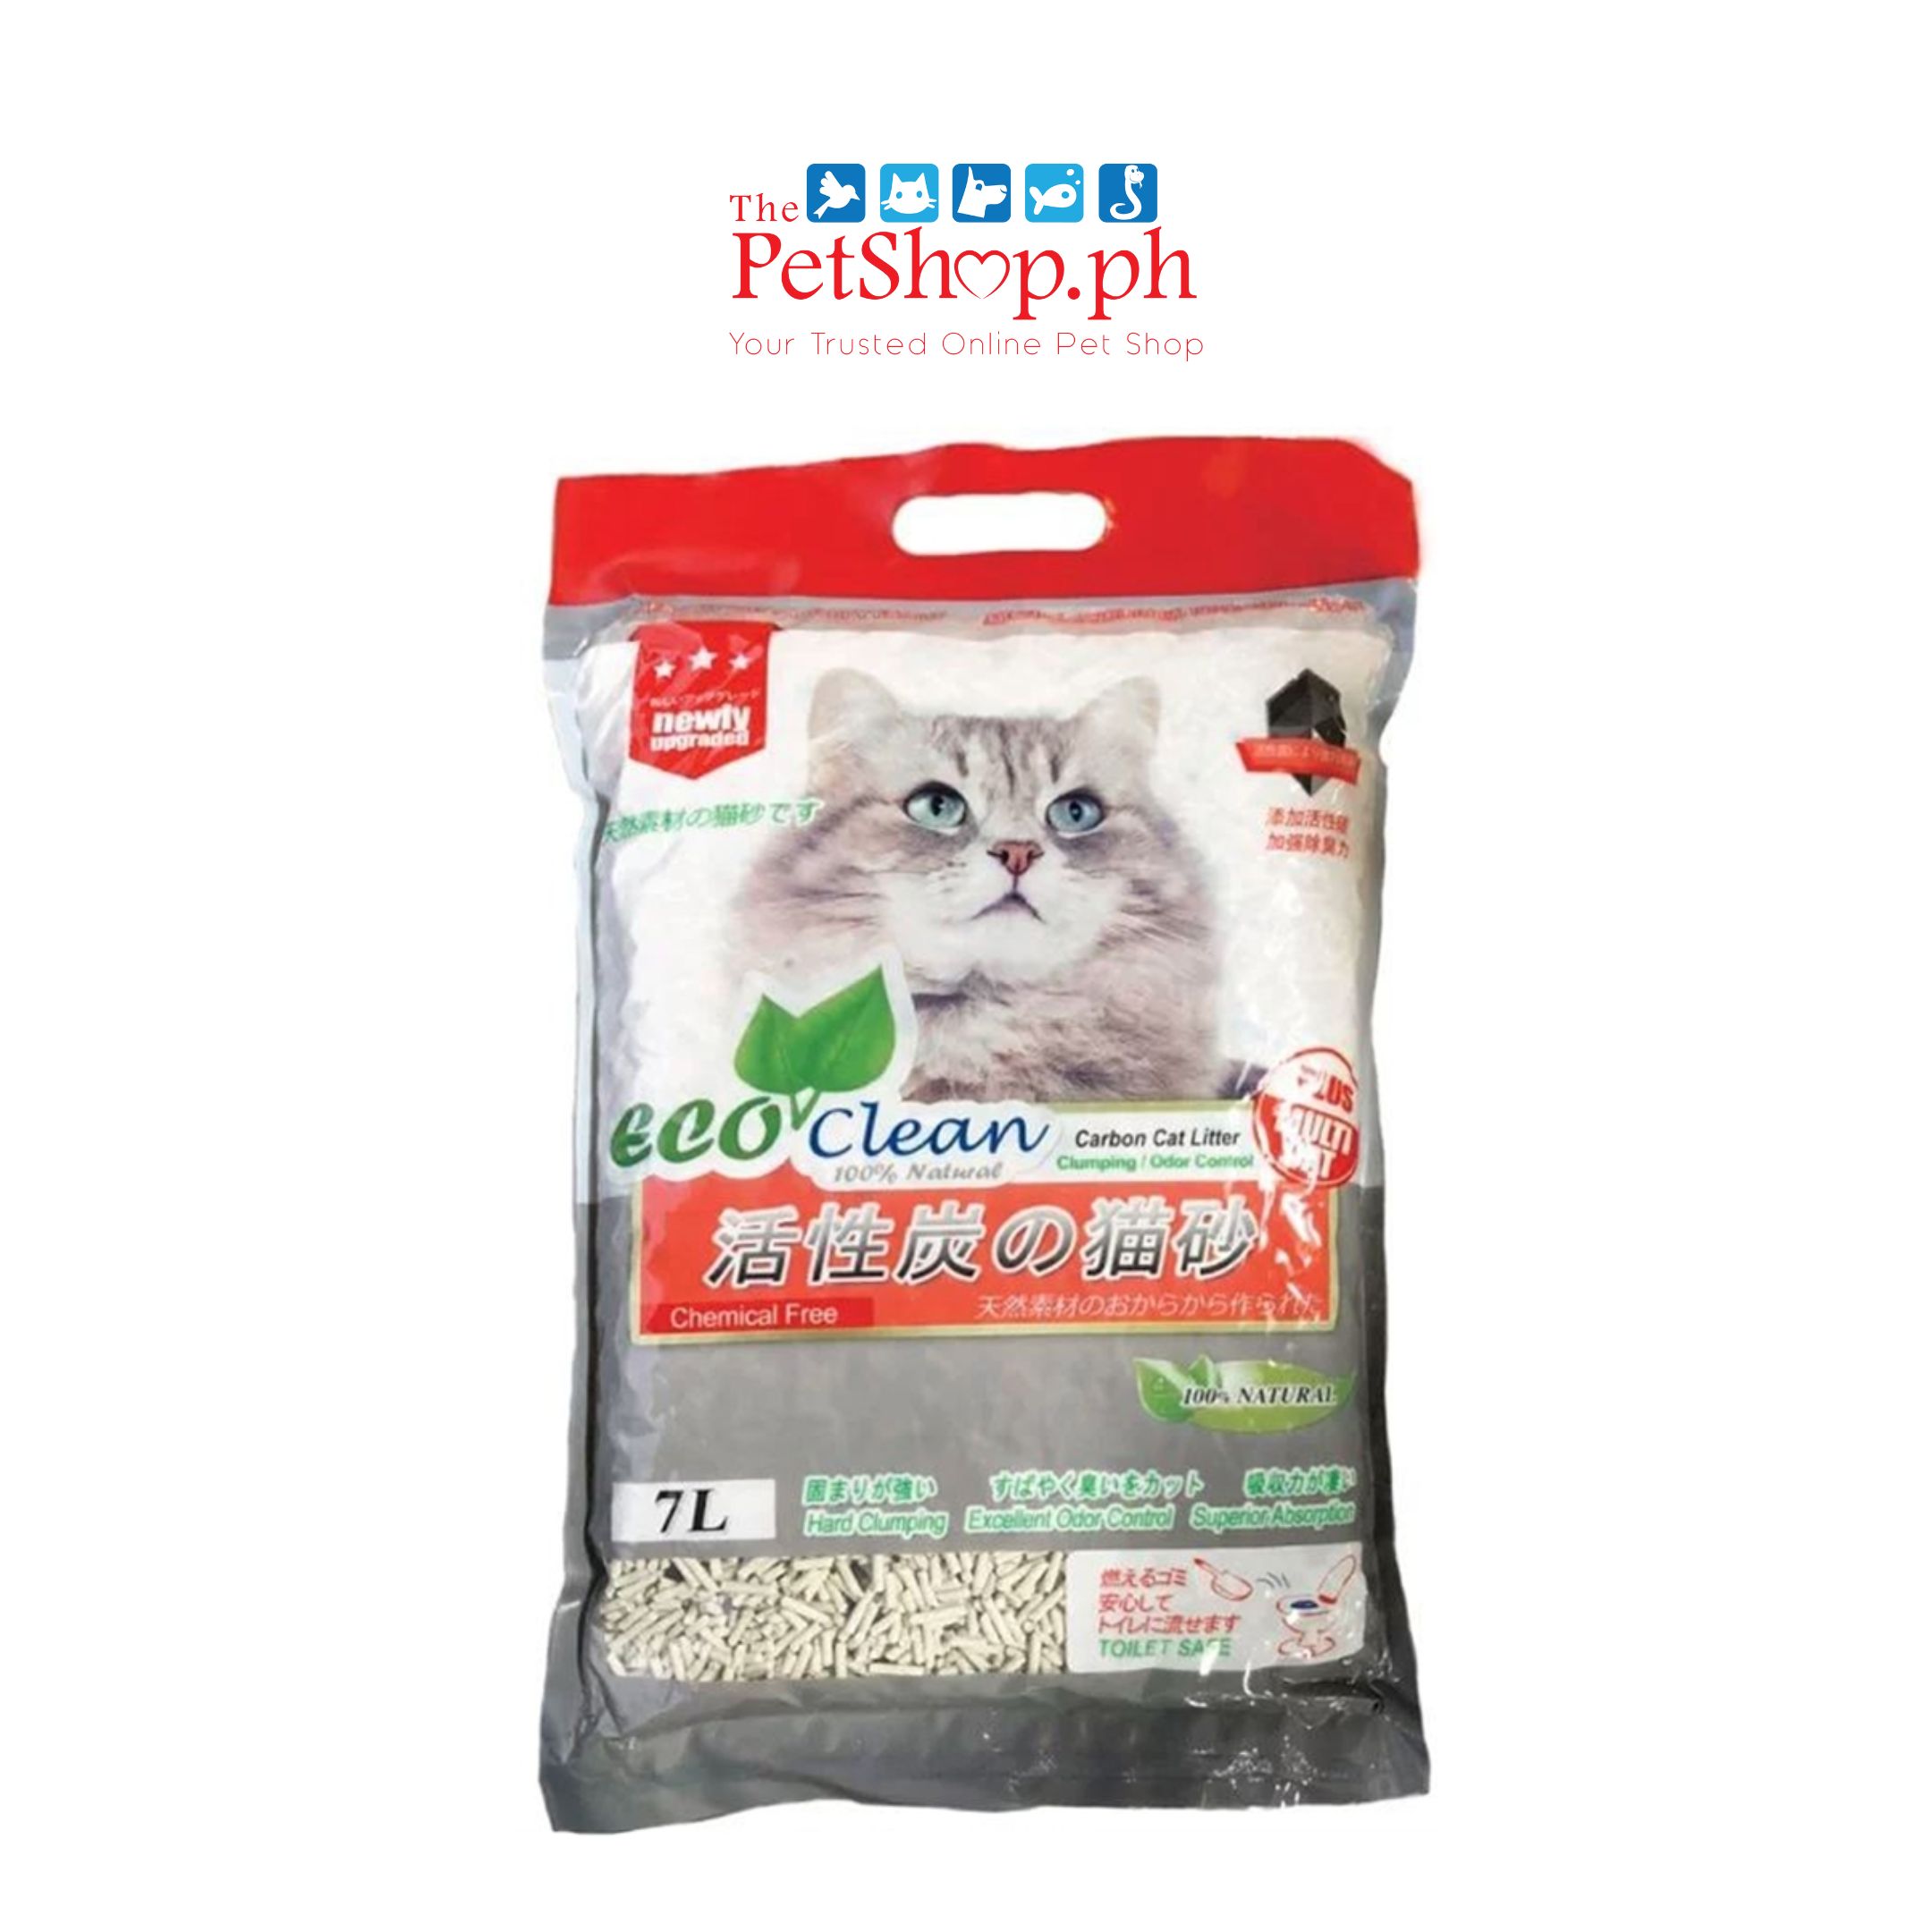 Eco Clean Tofu Carbon Cat Litter 7L